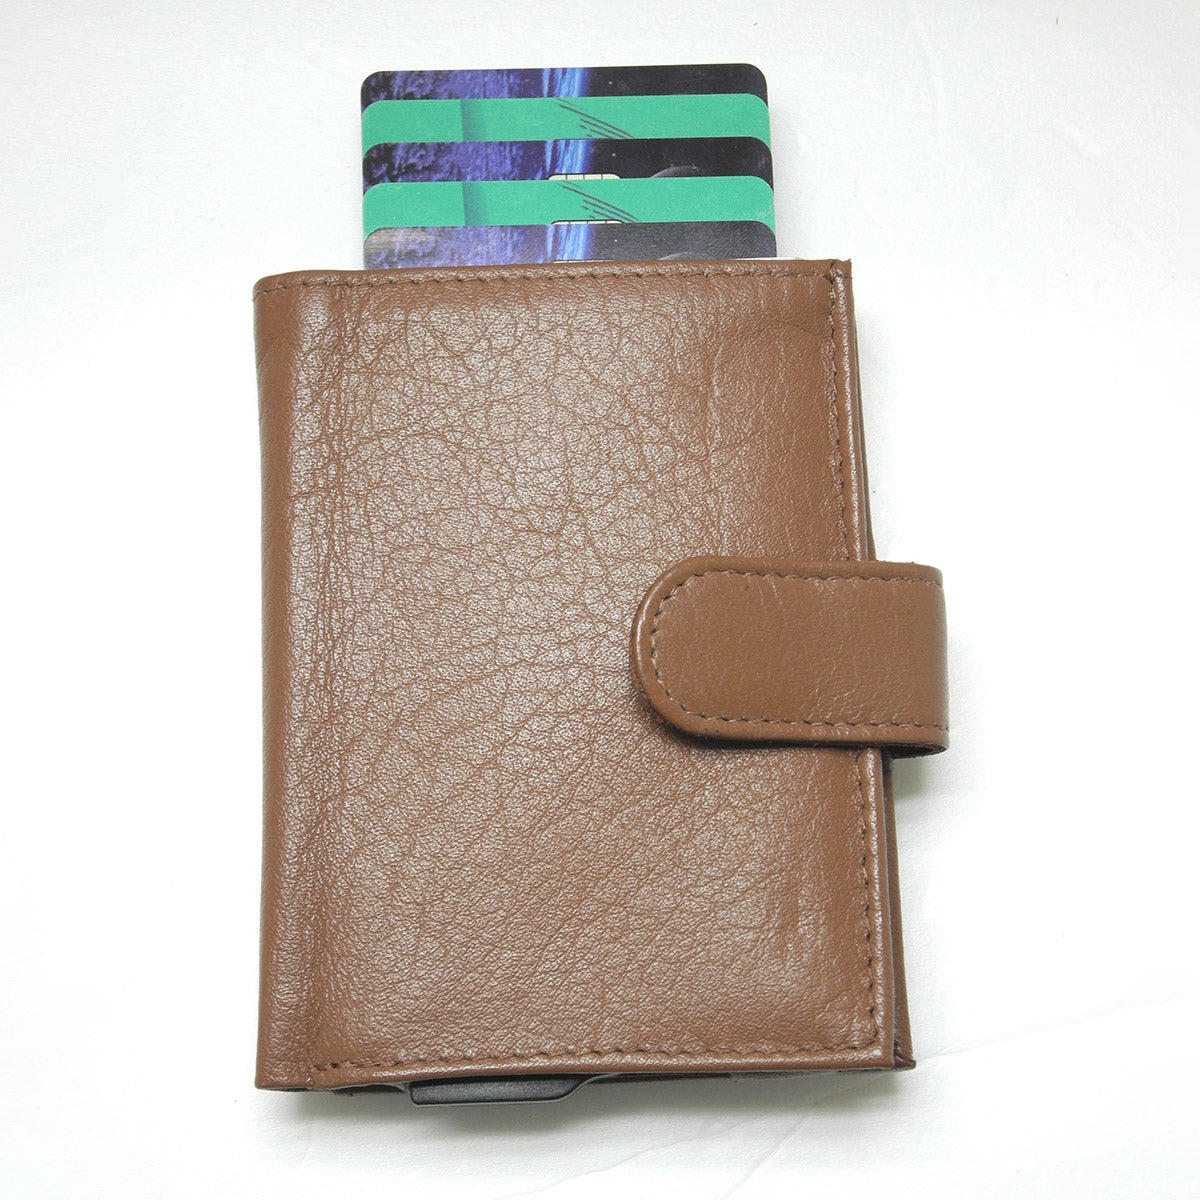 [寄海外] CardHoda - RFID 防盜卡片套真皮銀包（灰色 / 藍色 / 啡色 / 黑色）18-893-H10001